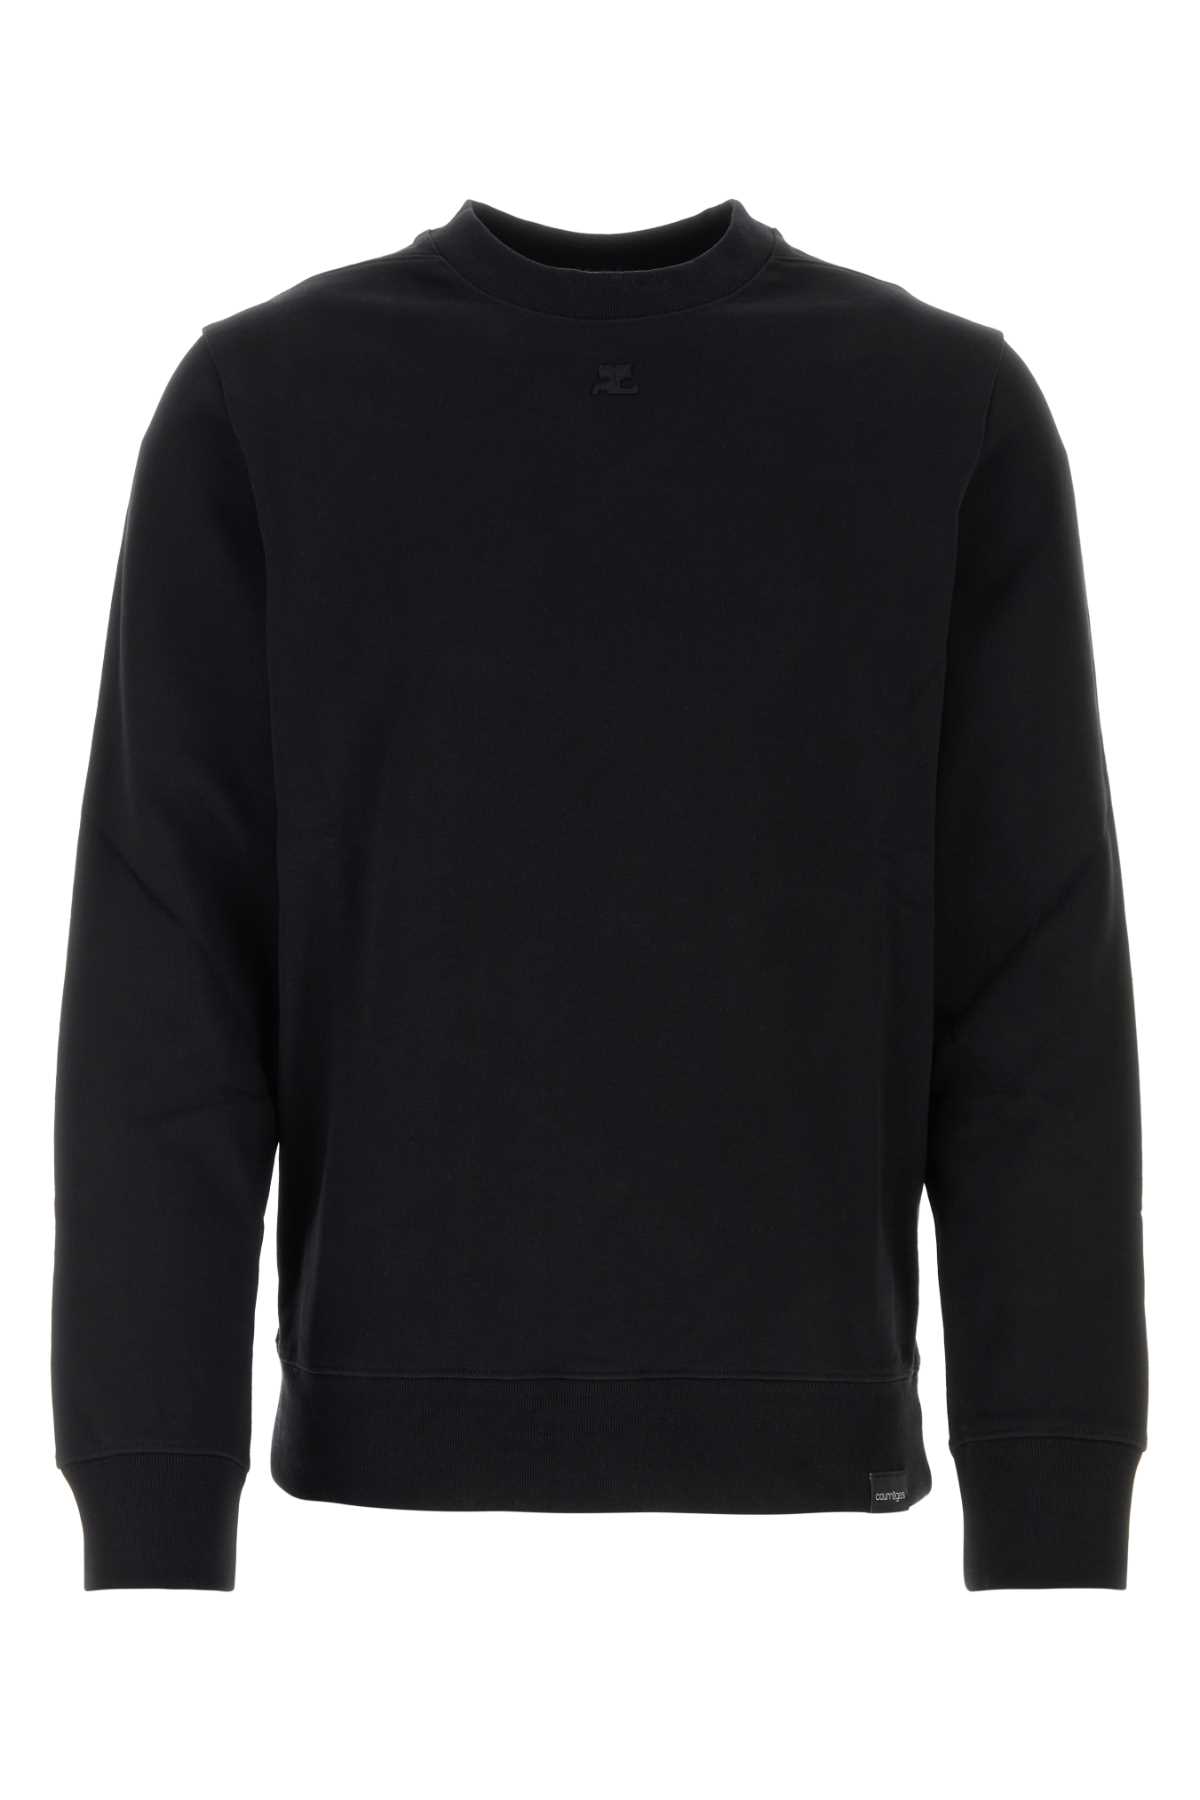 Courrèges Black Cotton Sweatshirt